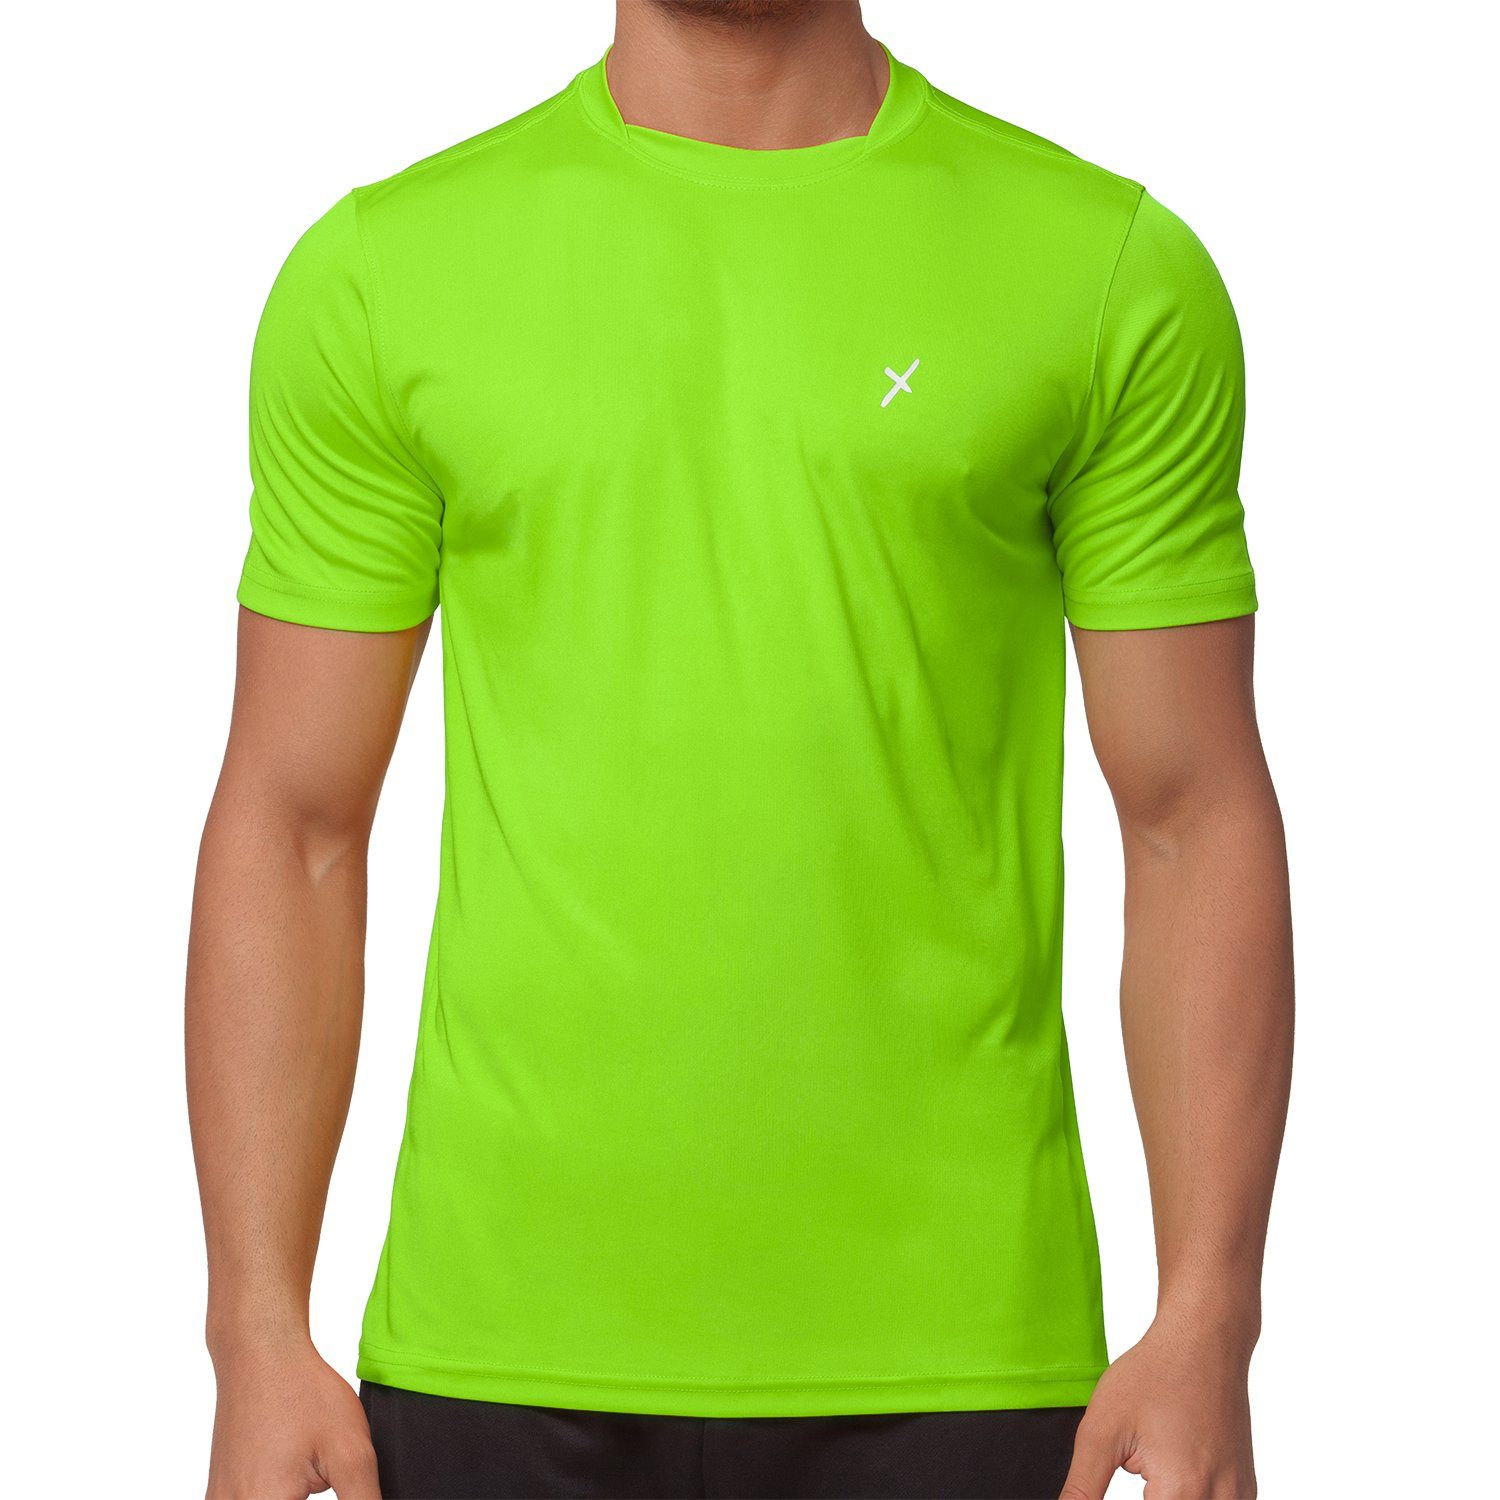 CFLEX Trainingsshirt Herren Sport Shirt Fitness T-Shirt Sportswear Collection Grün